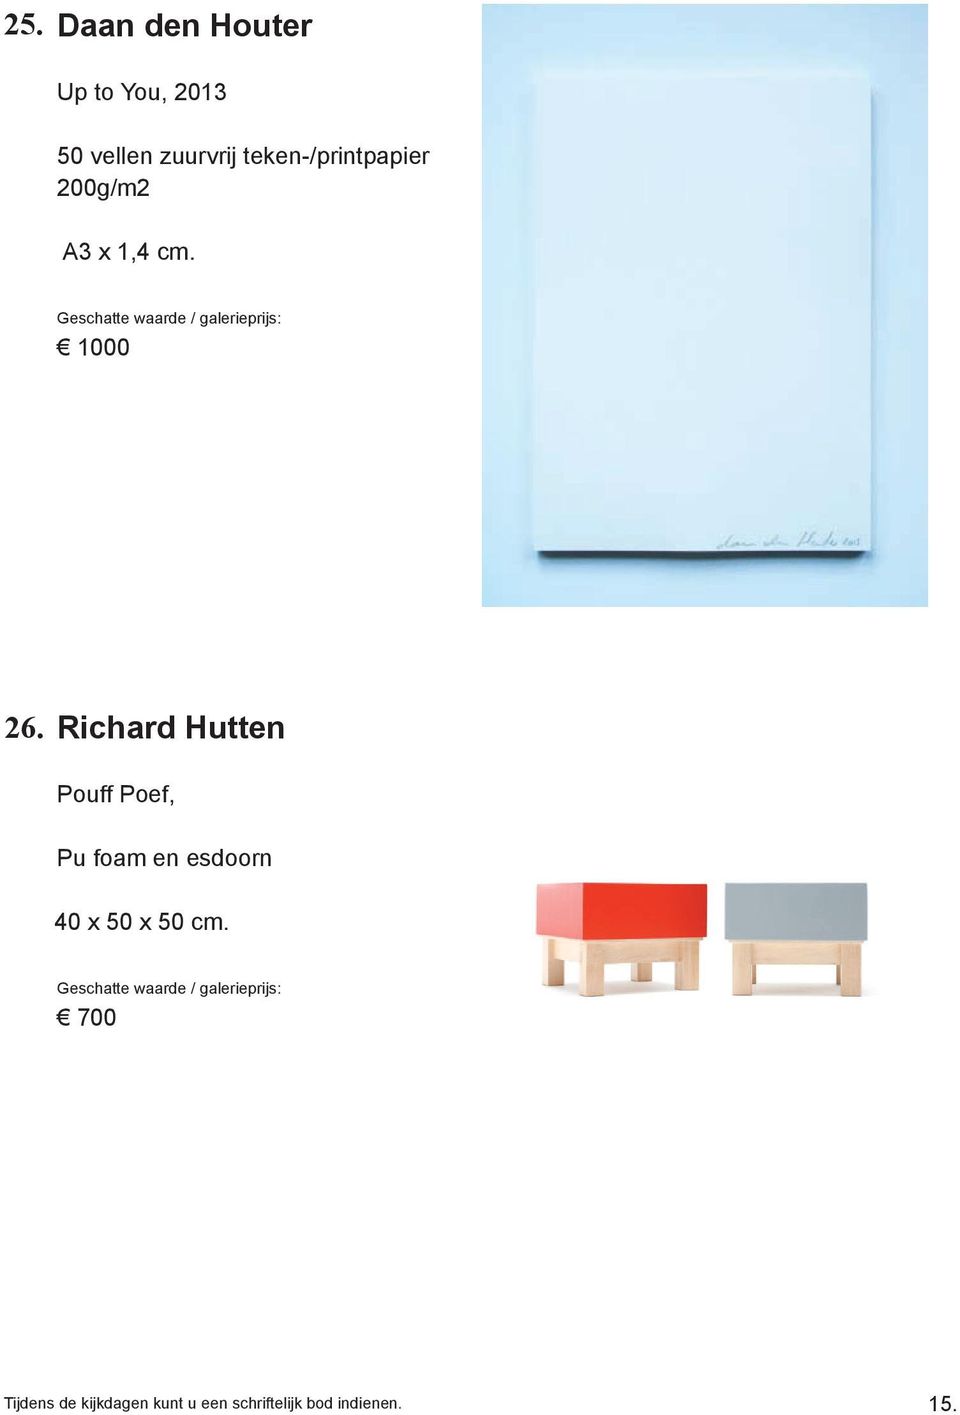 Richard Hutten Pouff Poef, Pu foam en esdoorn 40 x 50 x 50